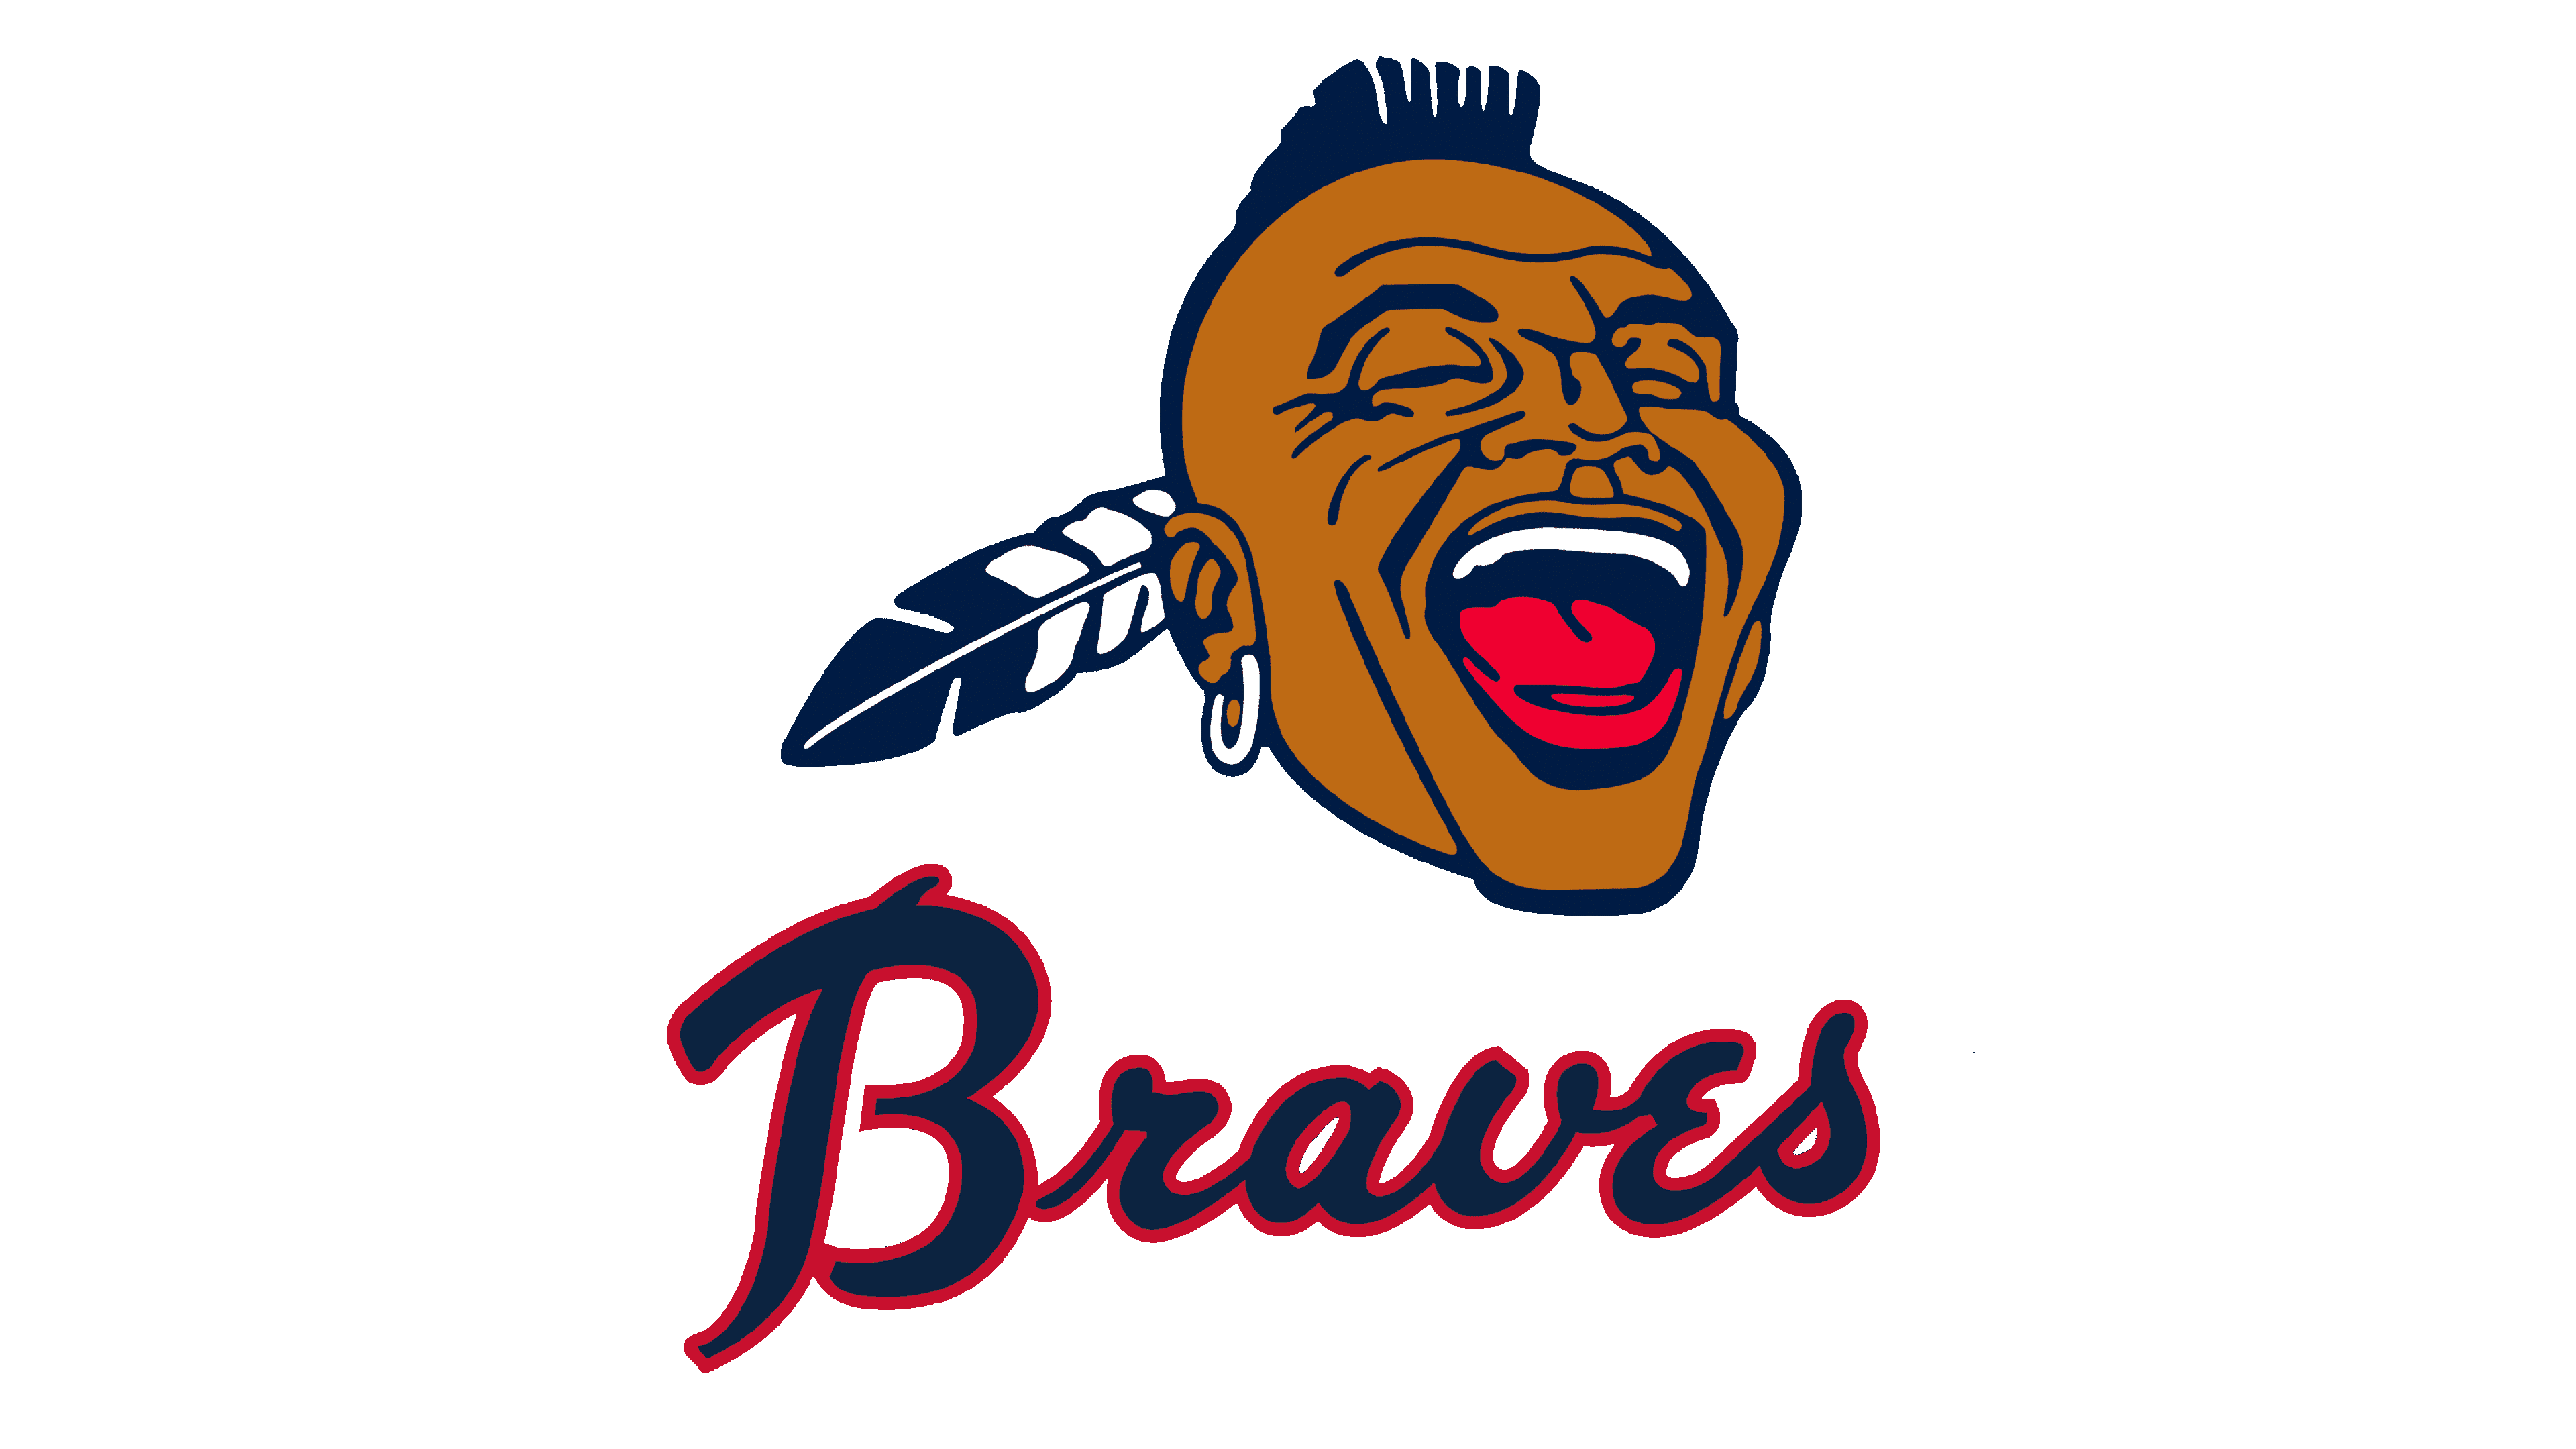 Atlanta Braves Logohistory Logo Image for Free - Free Logo Image